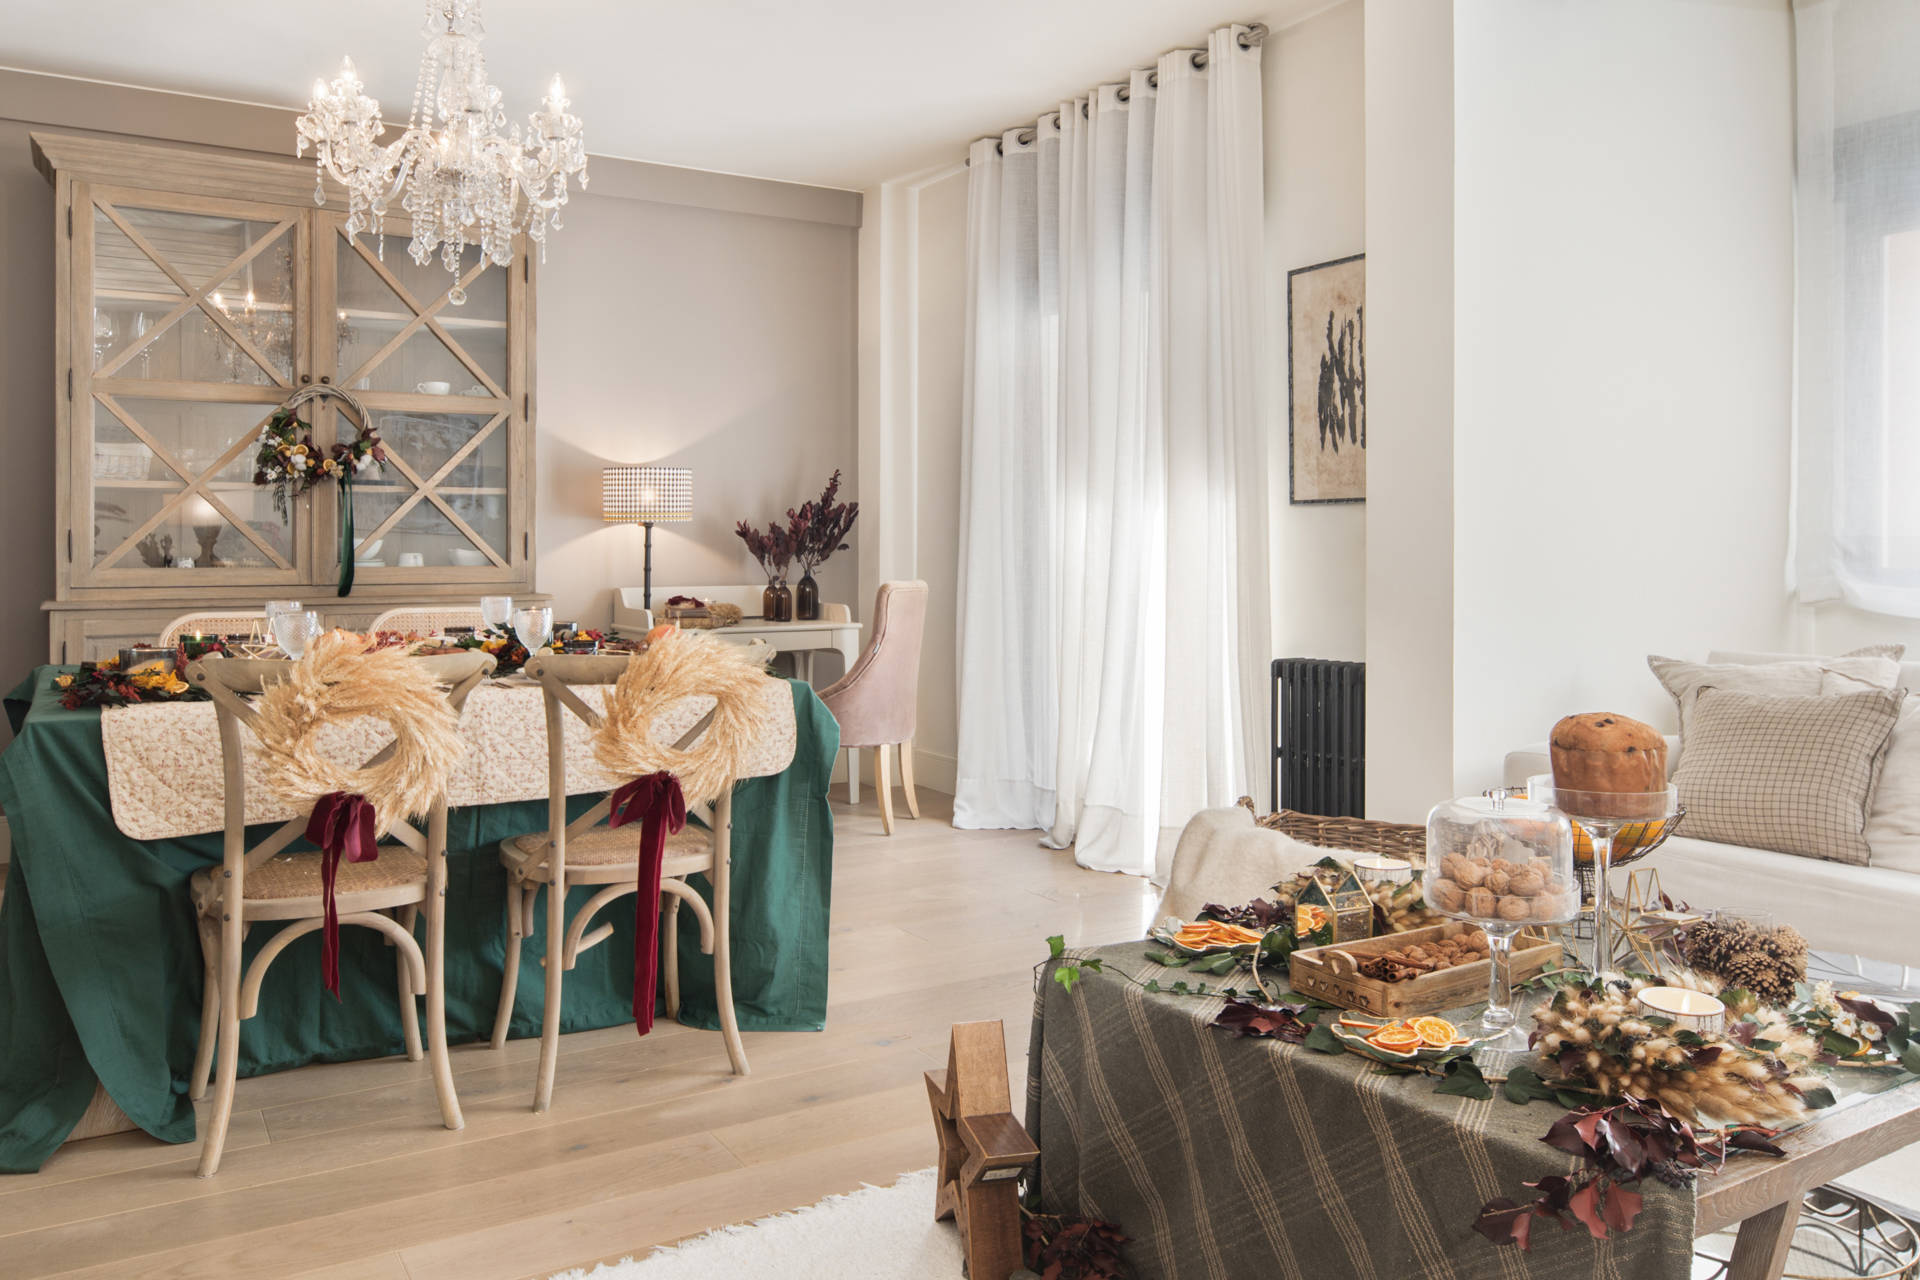 Salón comedor con decoración navideña con coronas, manteles verdes y centros de mesa festivos.